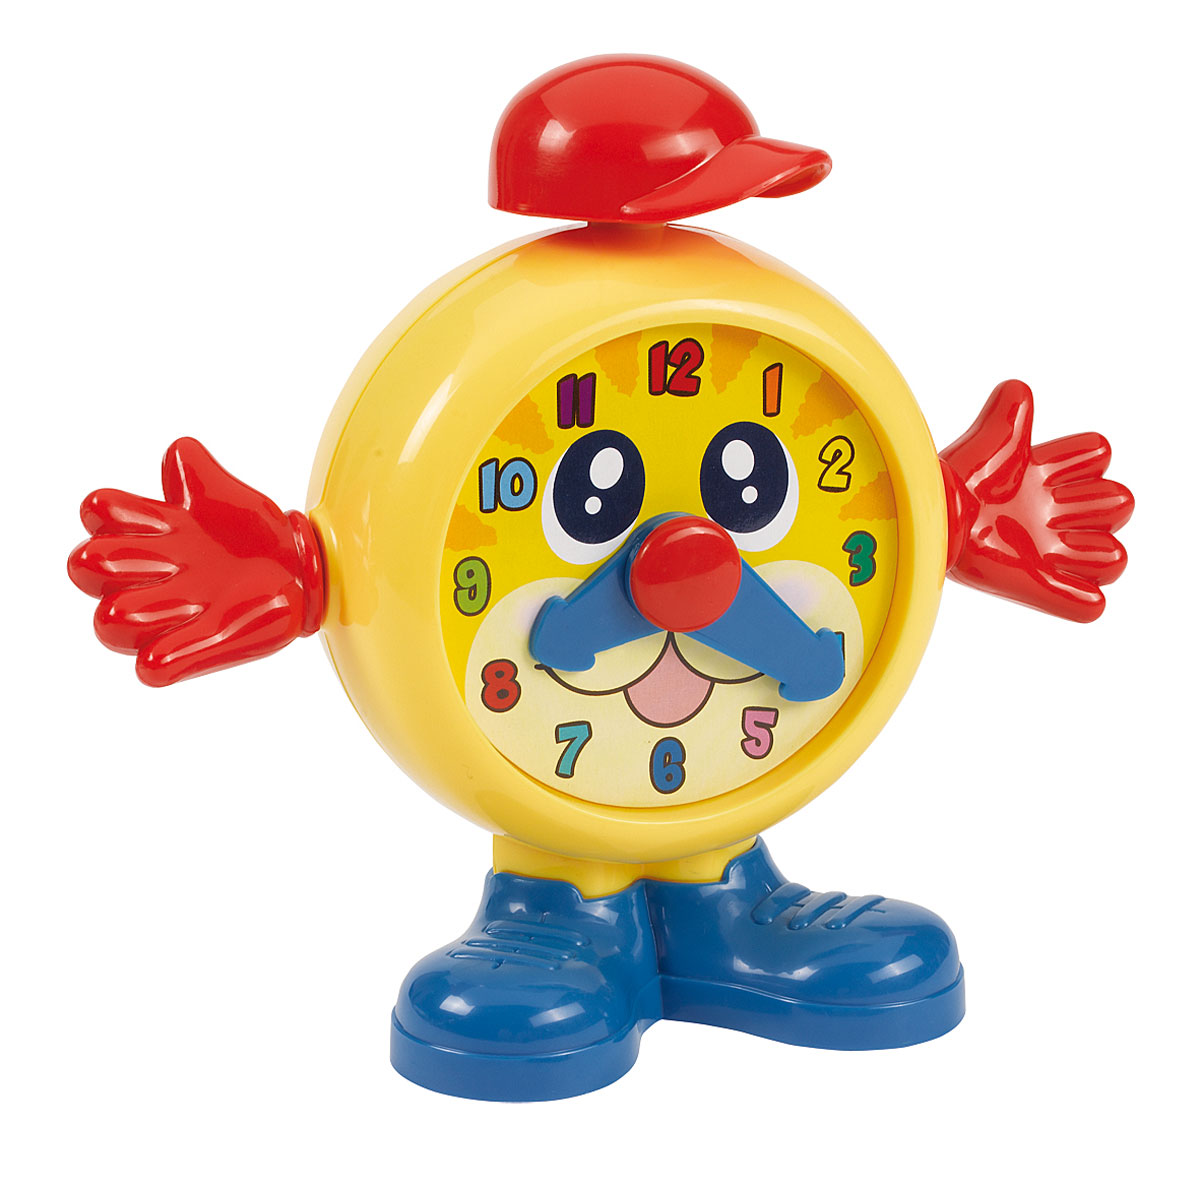 Купить игрушку часы. Часы игрушка. Игрушка будильник. Будильник детский игрушка. Игрушка часы будильник.